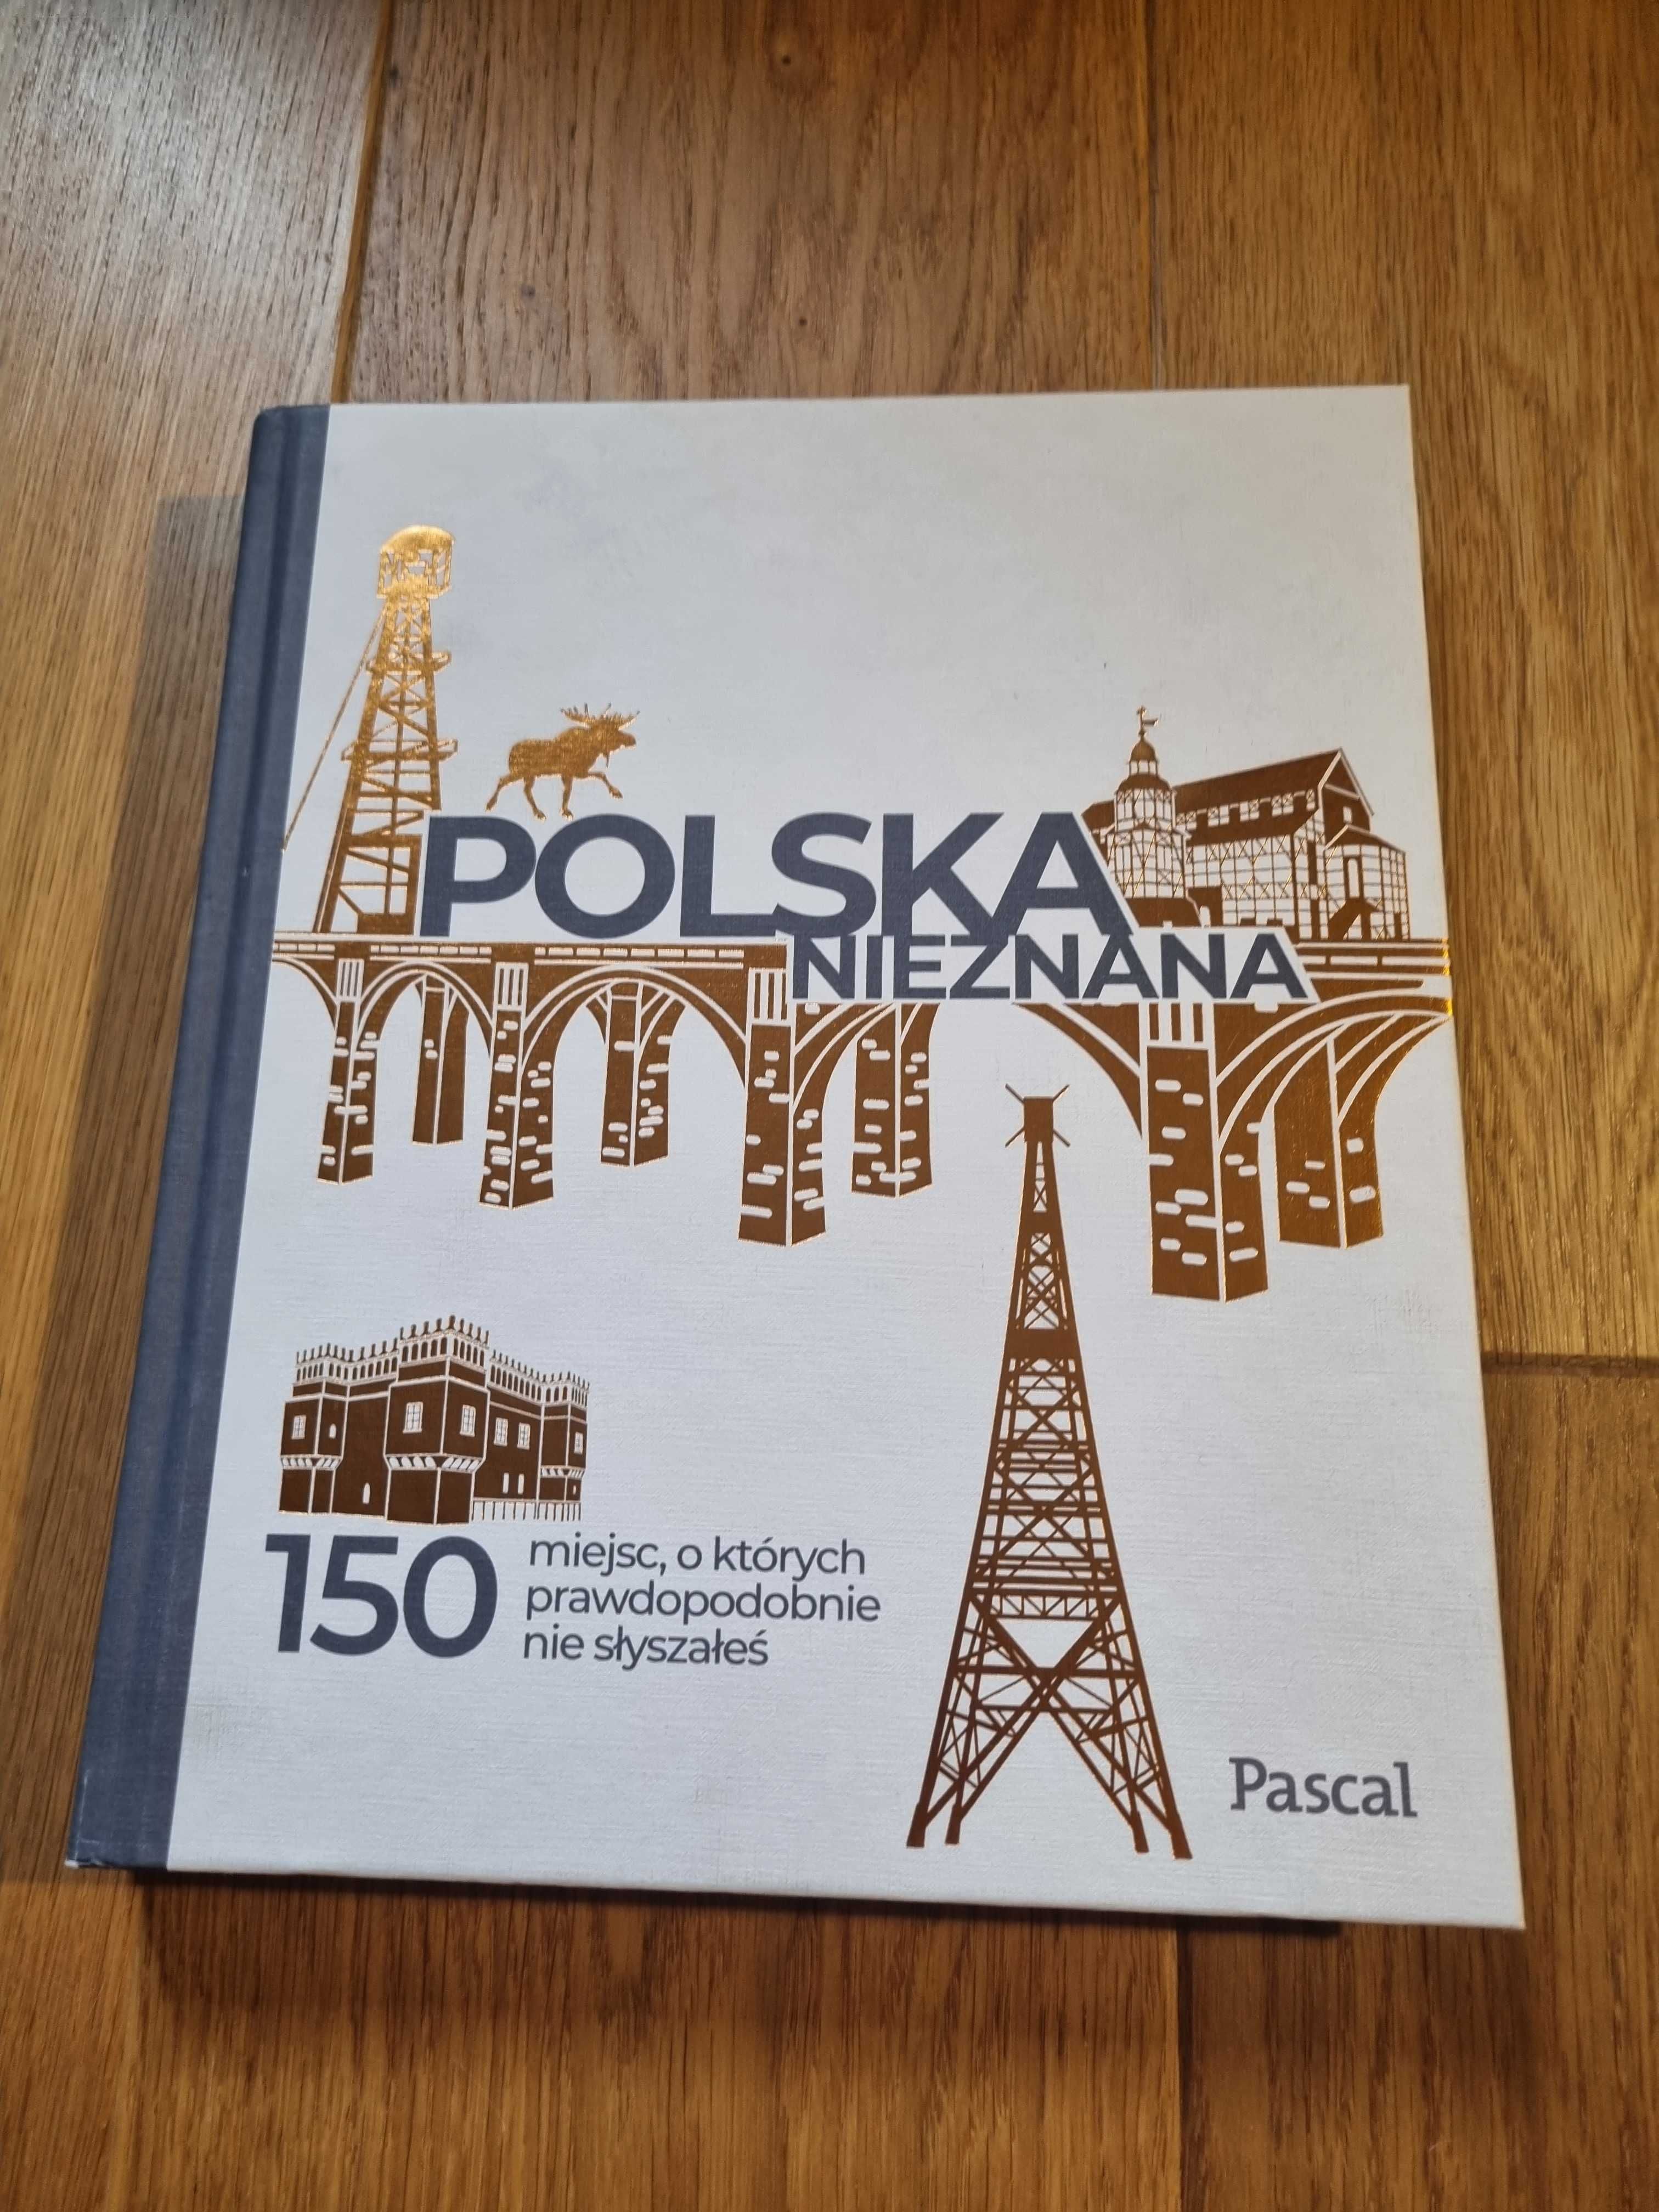 Książka/album "Polska nieznana" Magdalena Stefańczyk